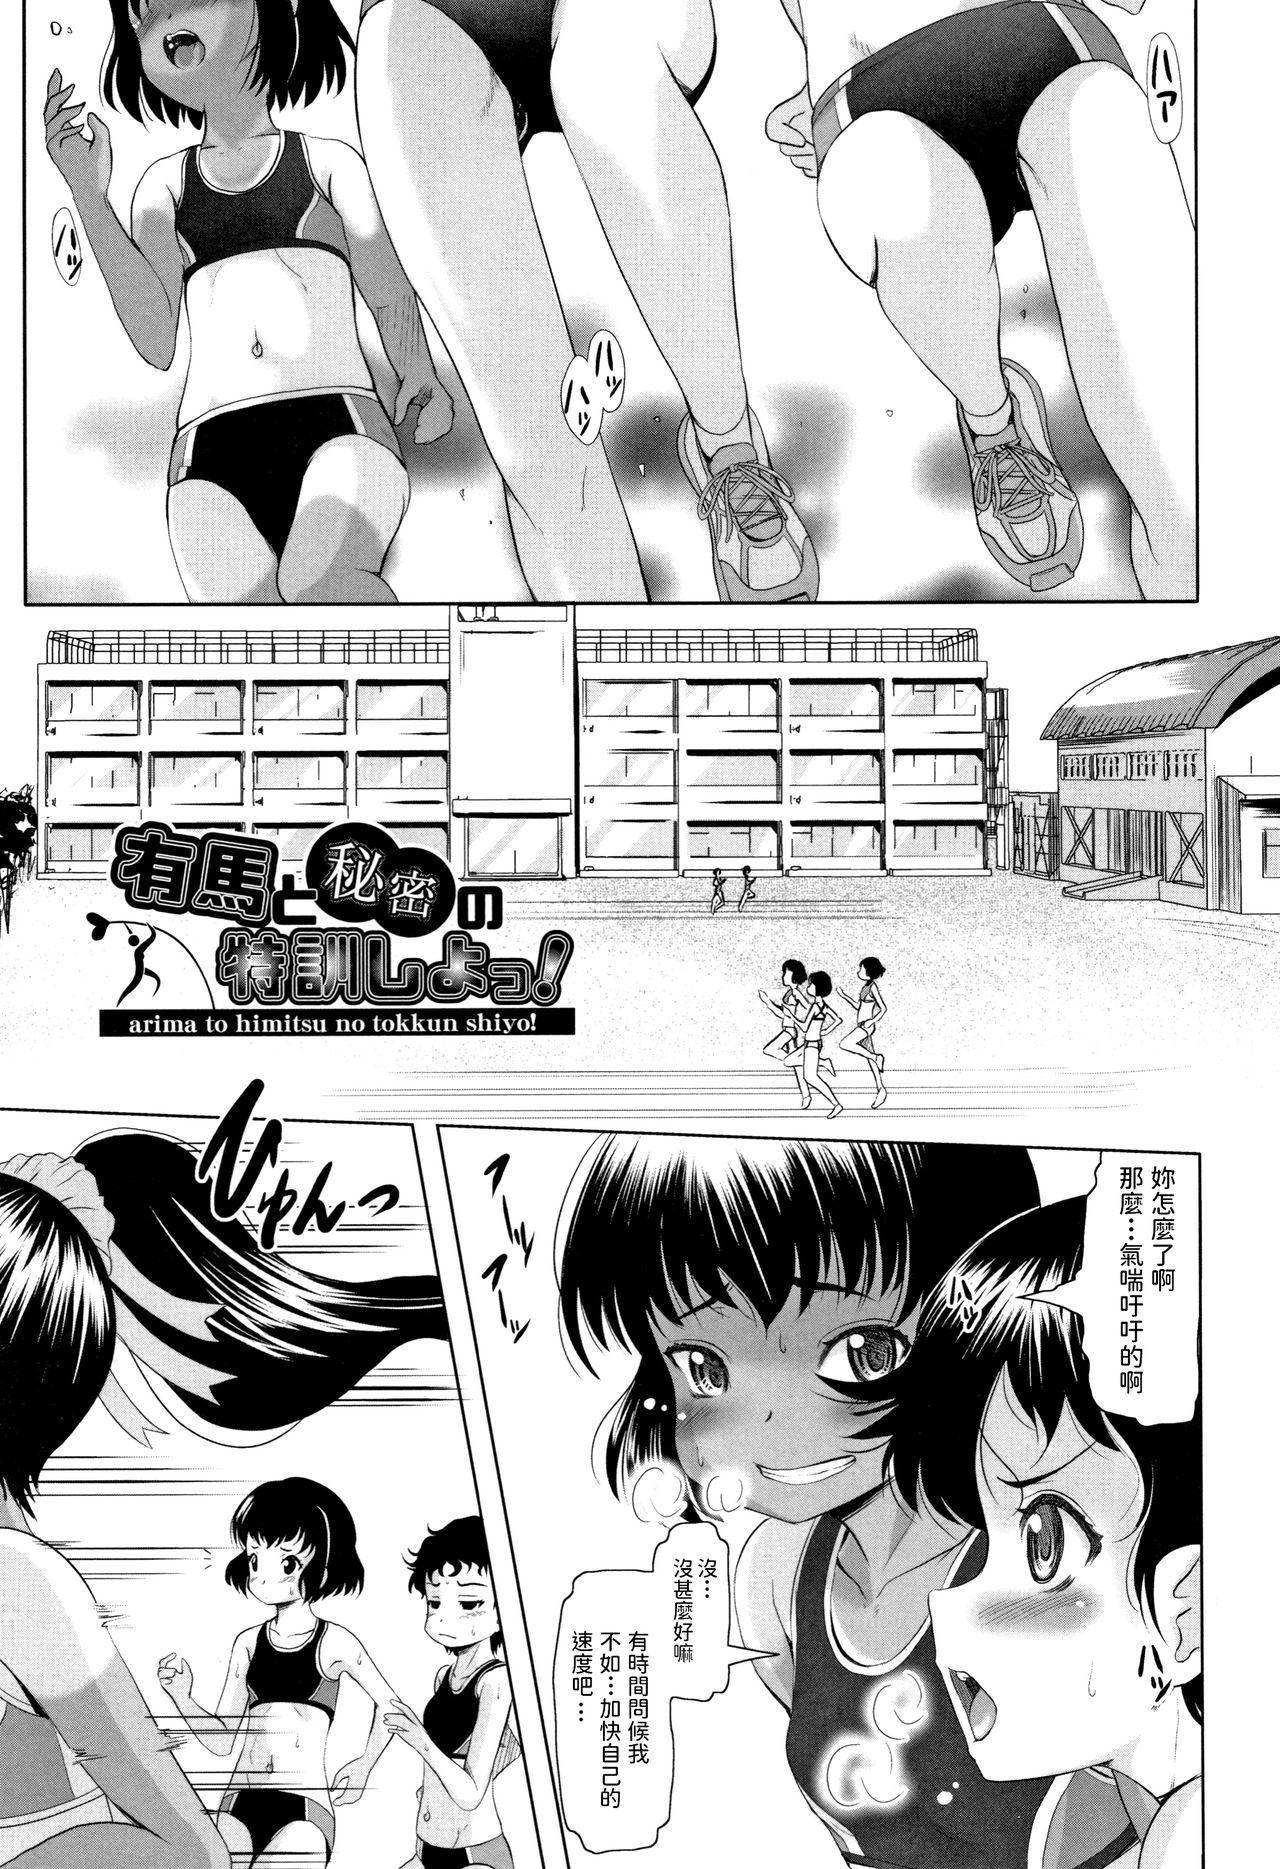 Toilet Arima to Himitsu no Tokkun Shiyo! Matures - Page 1